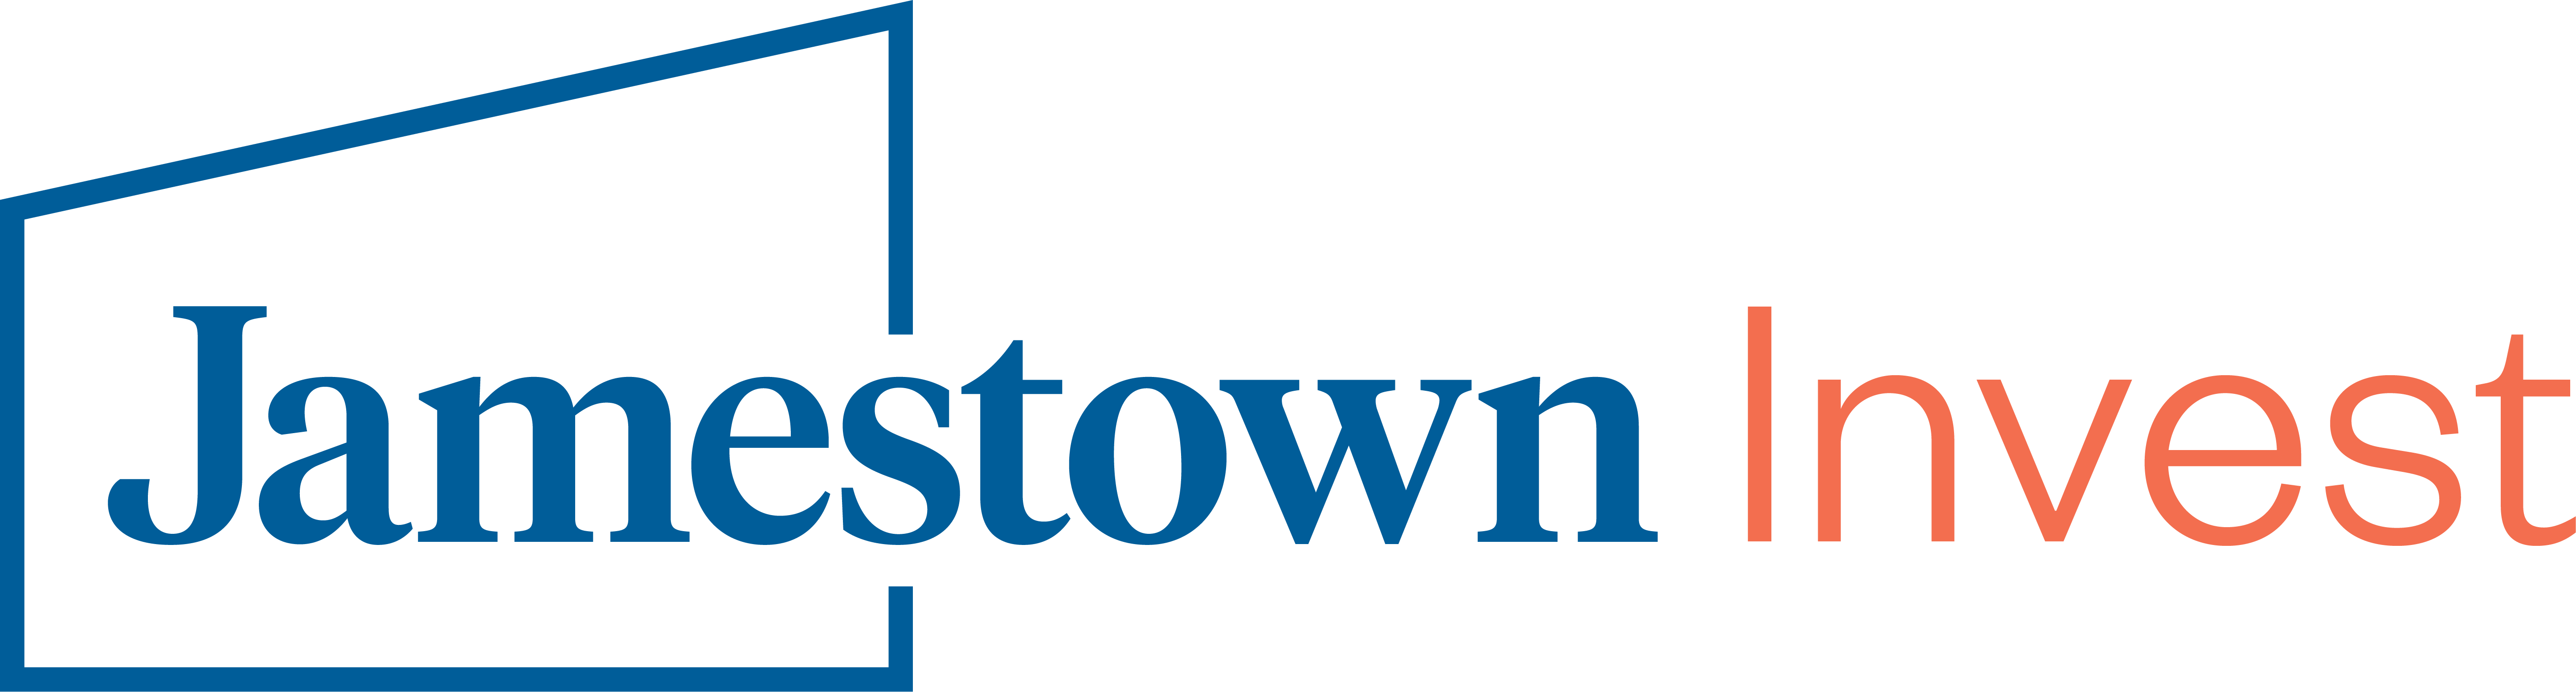 Jamestown Invest logo